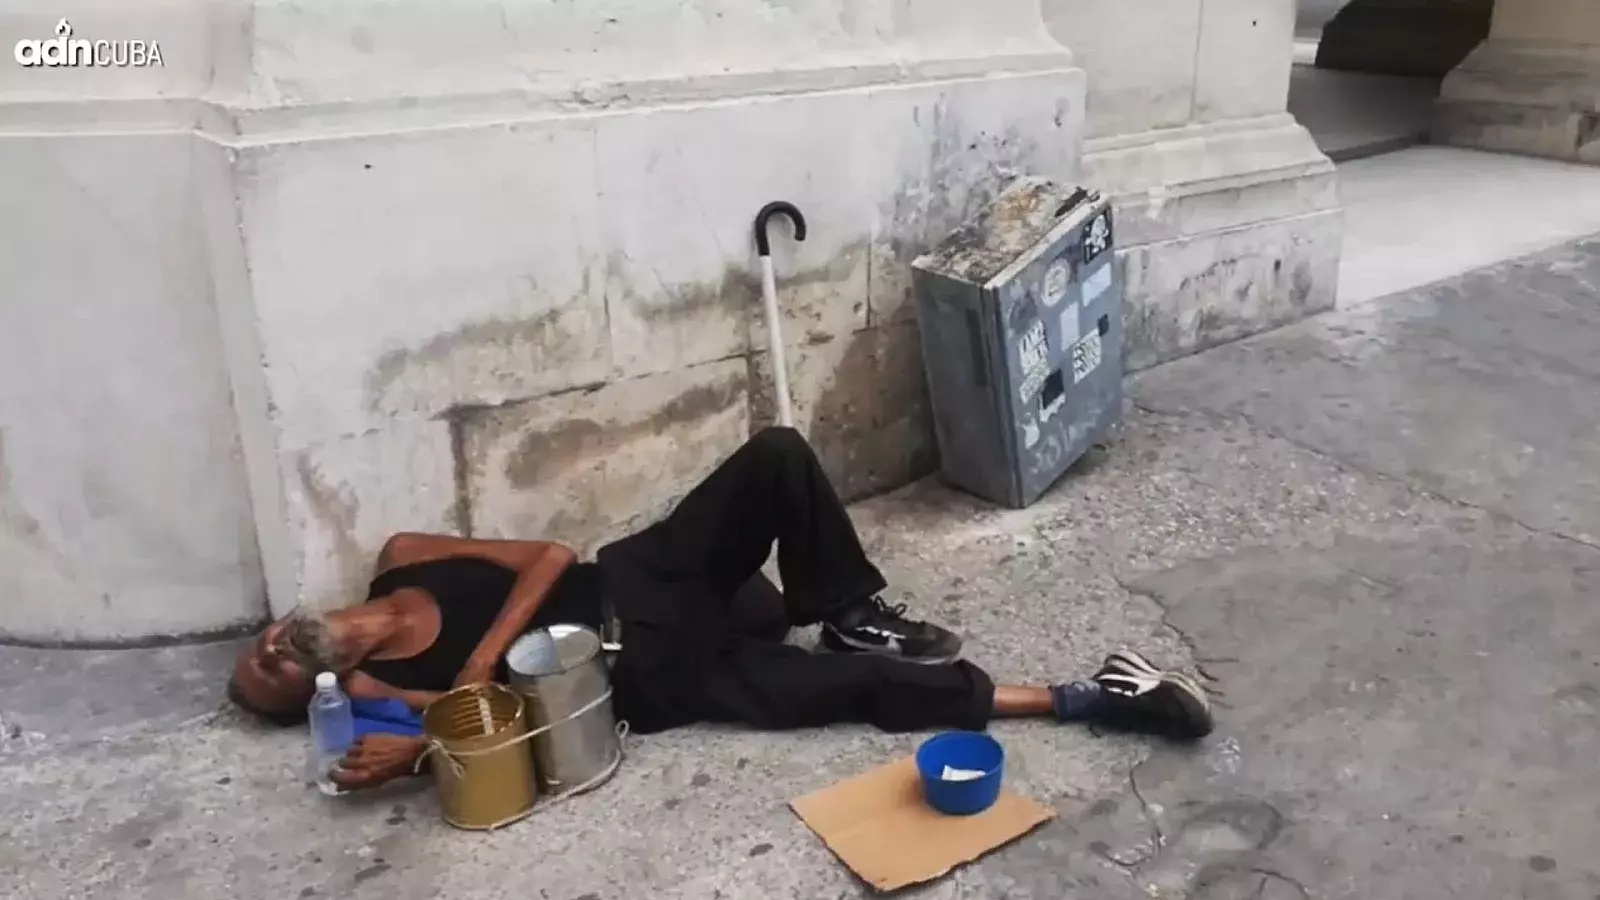 Personas en situación de calle en La Habana